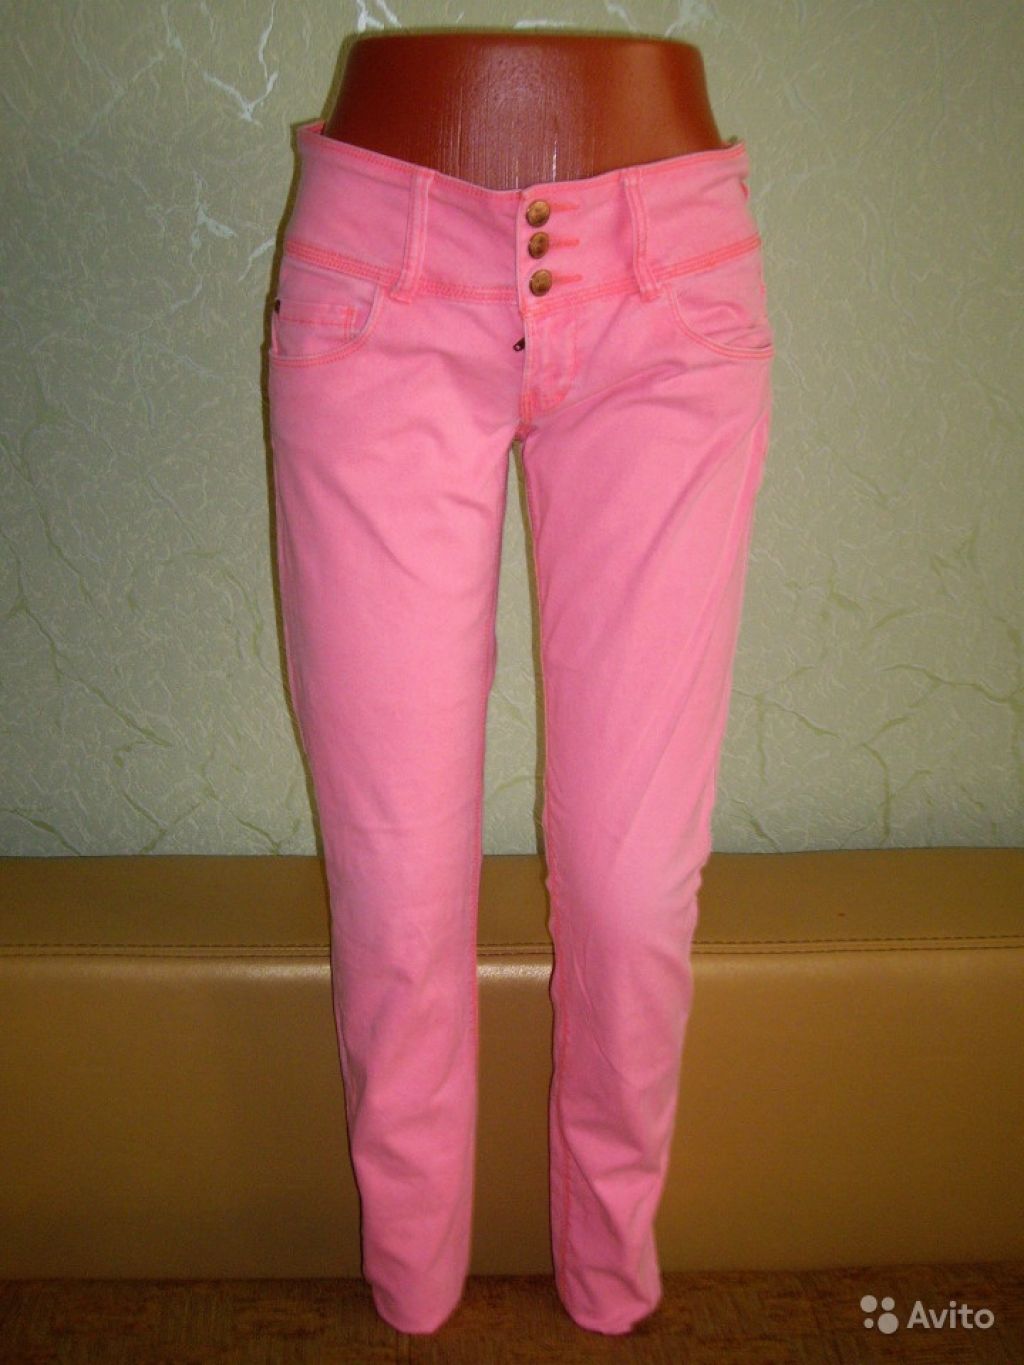 Нежно-розовые джинсы в Москве. Фото 1